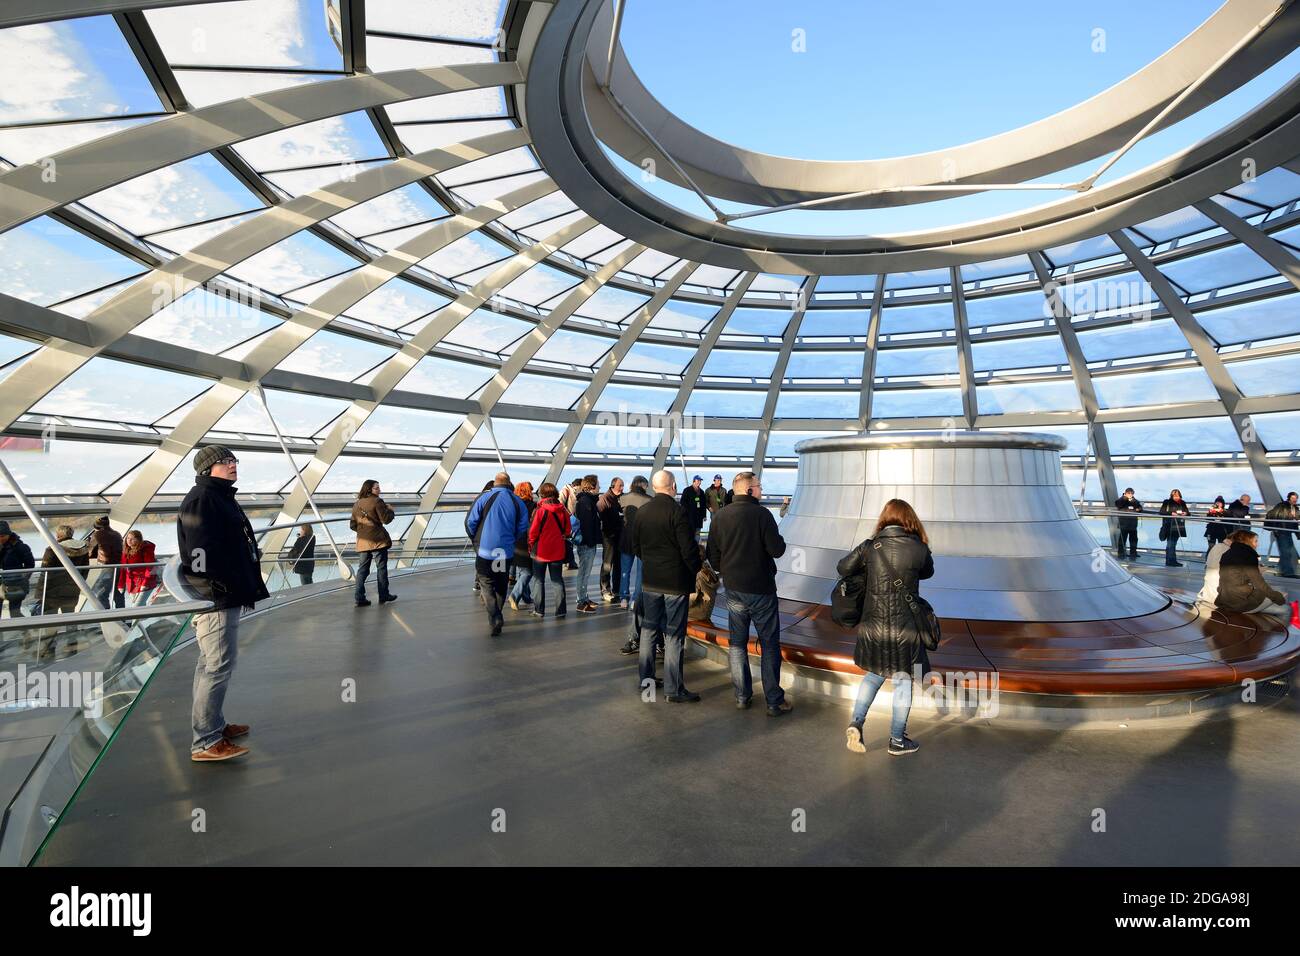 reichstagkuppel in berlin mit Besucher, Stock Photo